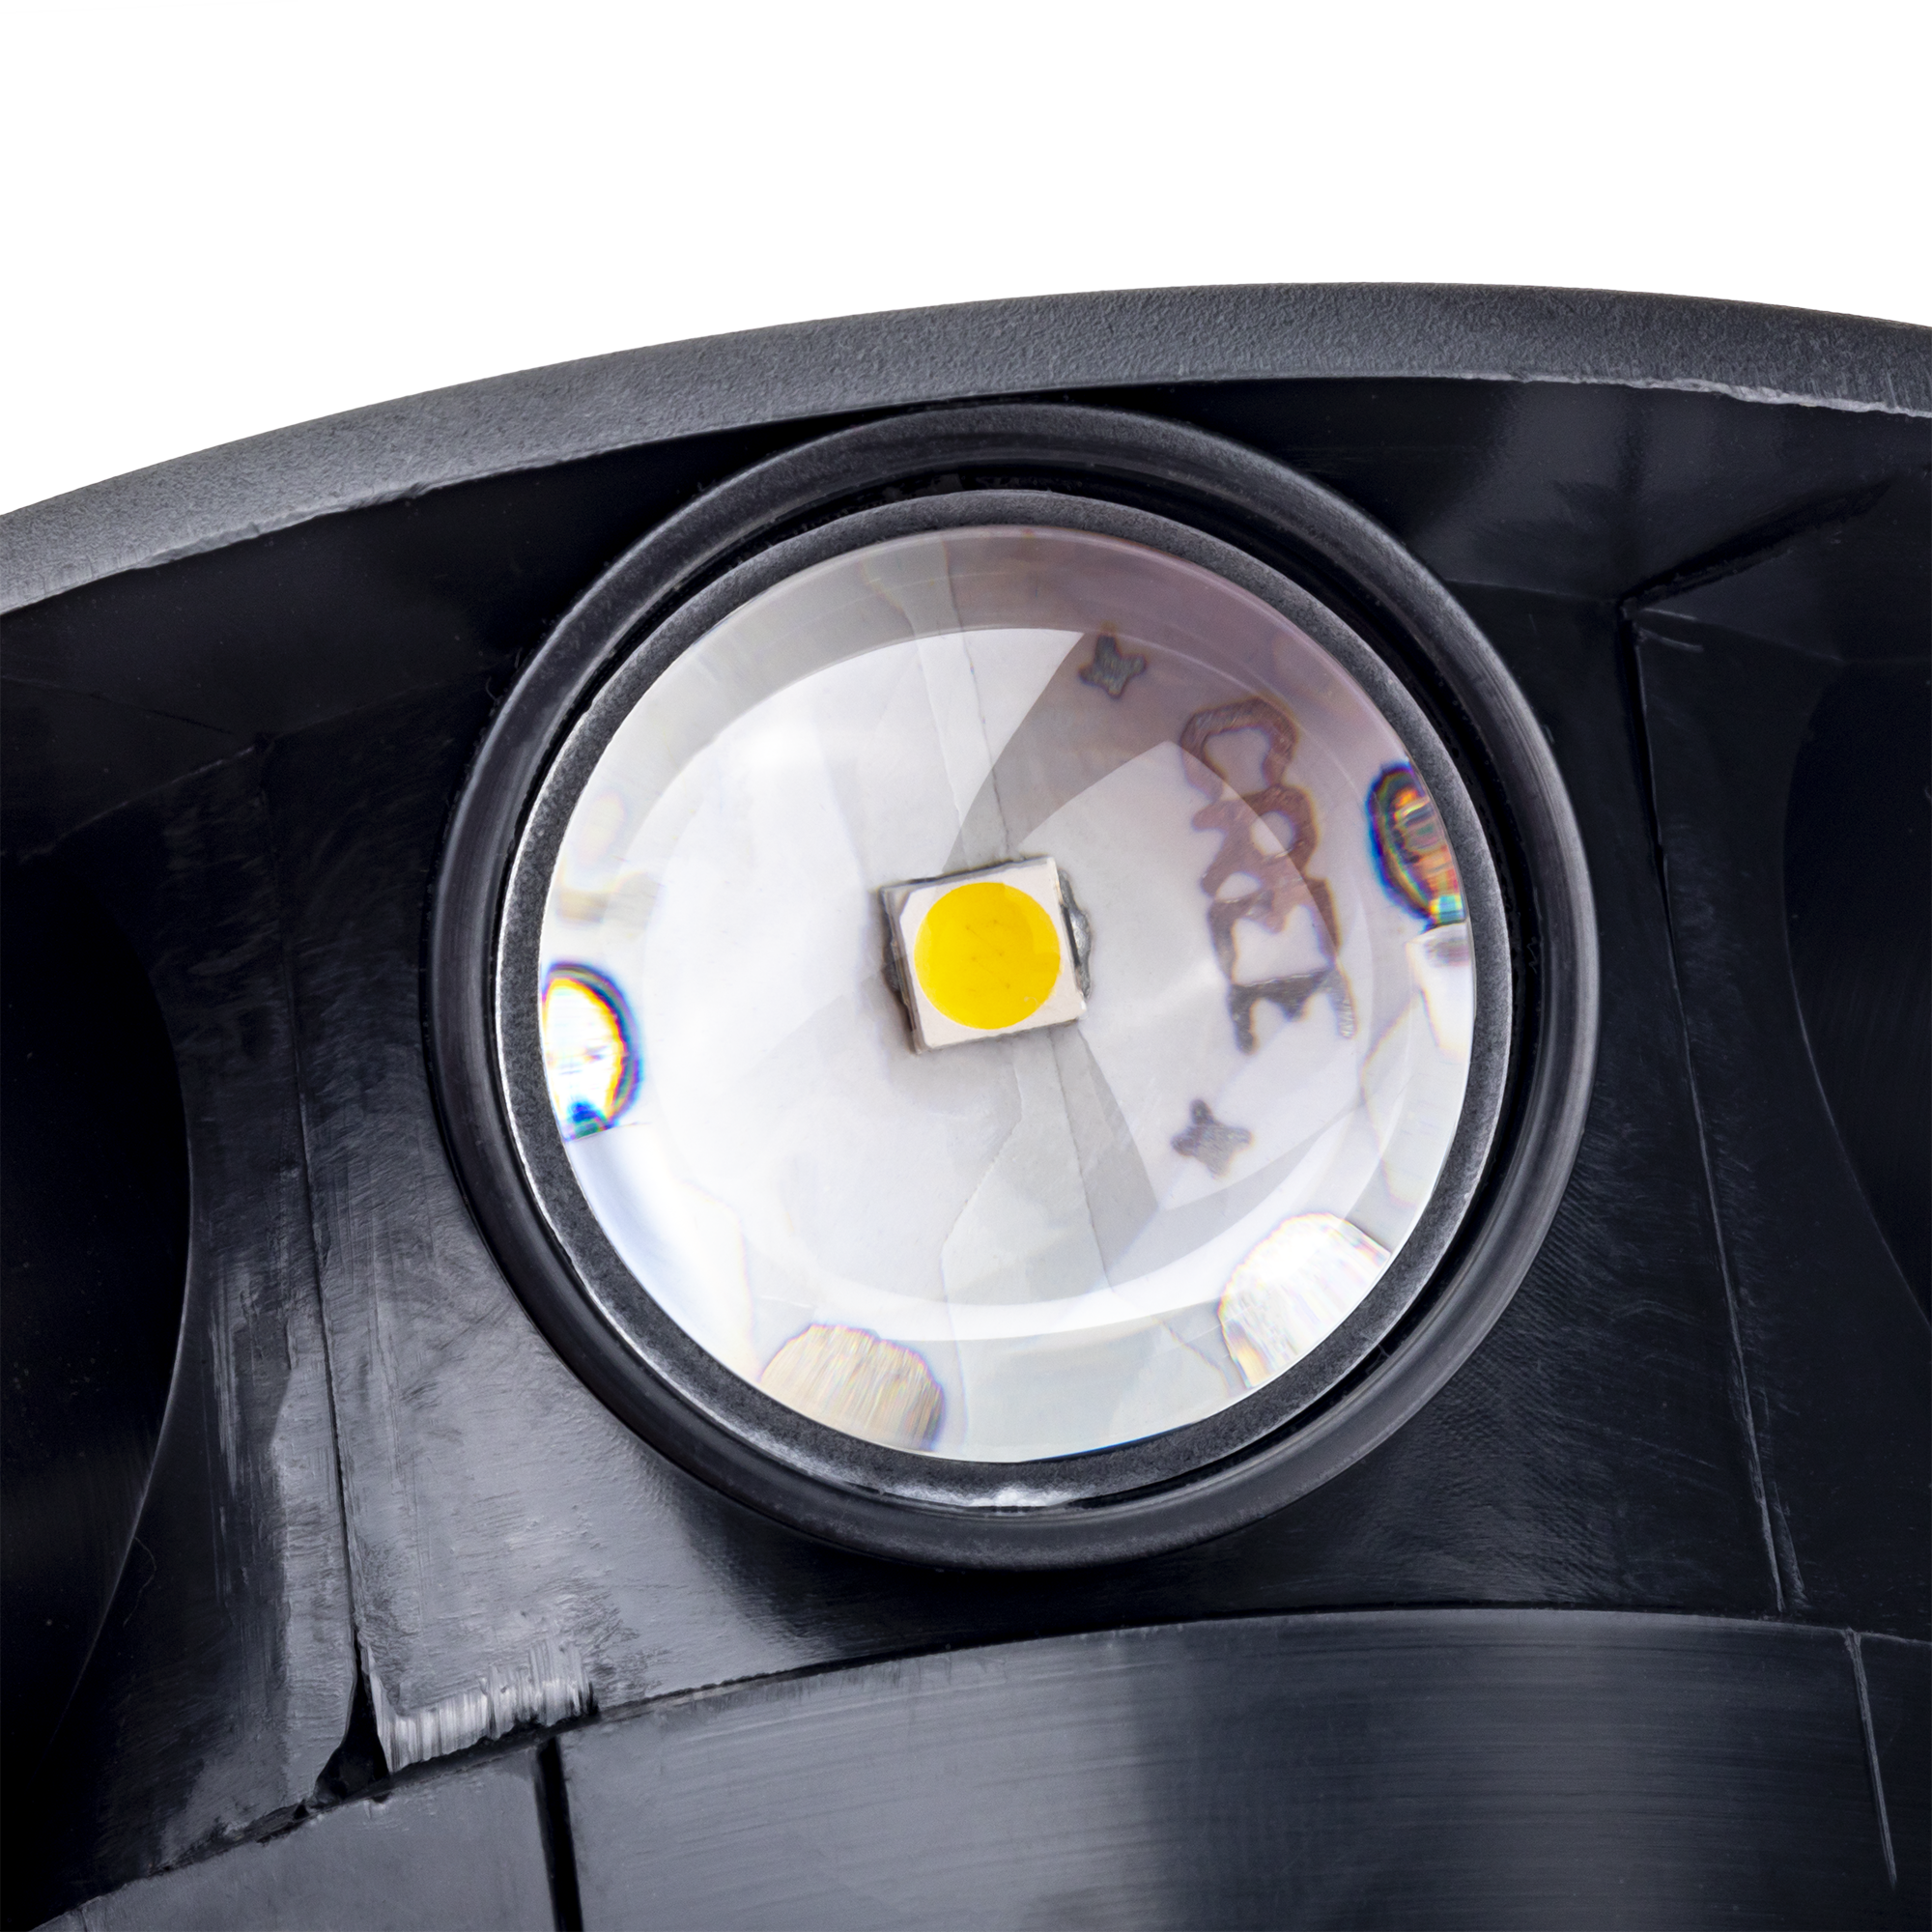 Светильник светодиодный накладной duwi NUOVO LED, 8Вт, 4200К, 720Лм, IP54, пластик, черный, 24793 1